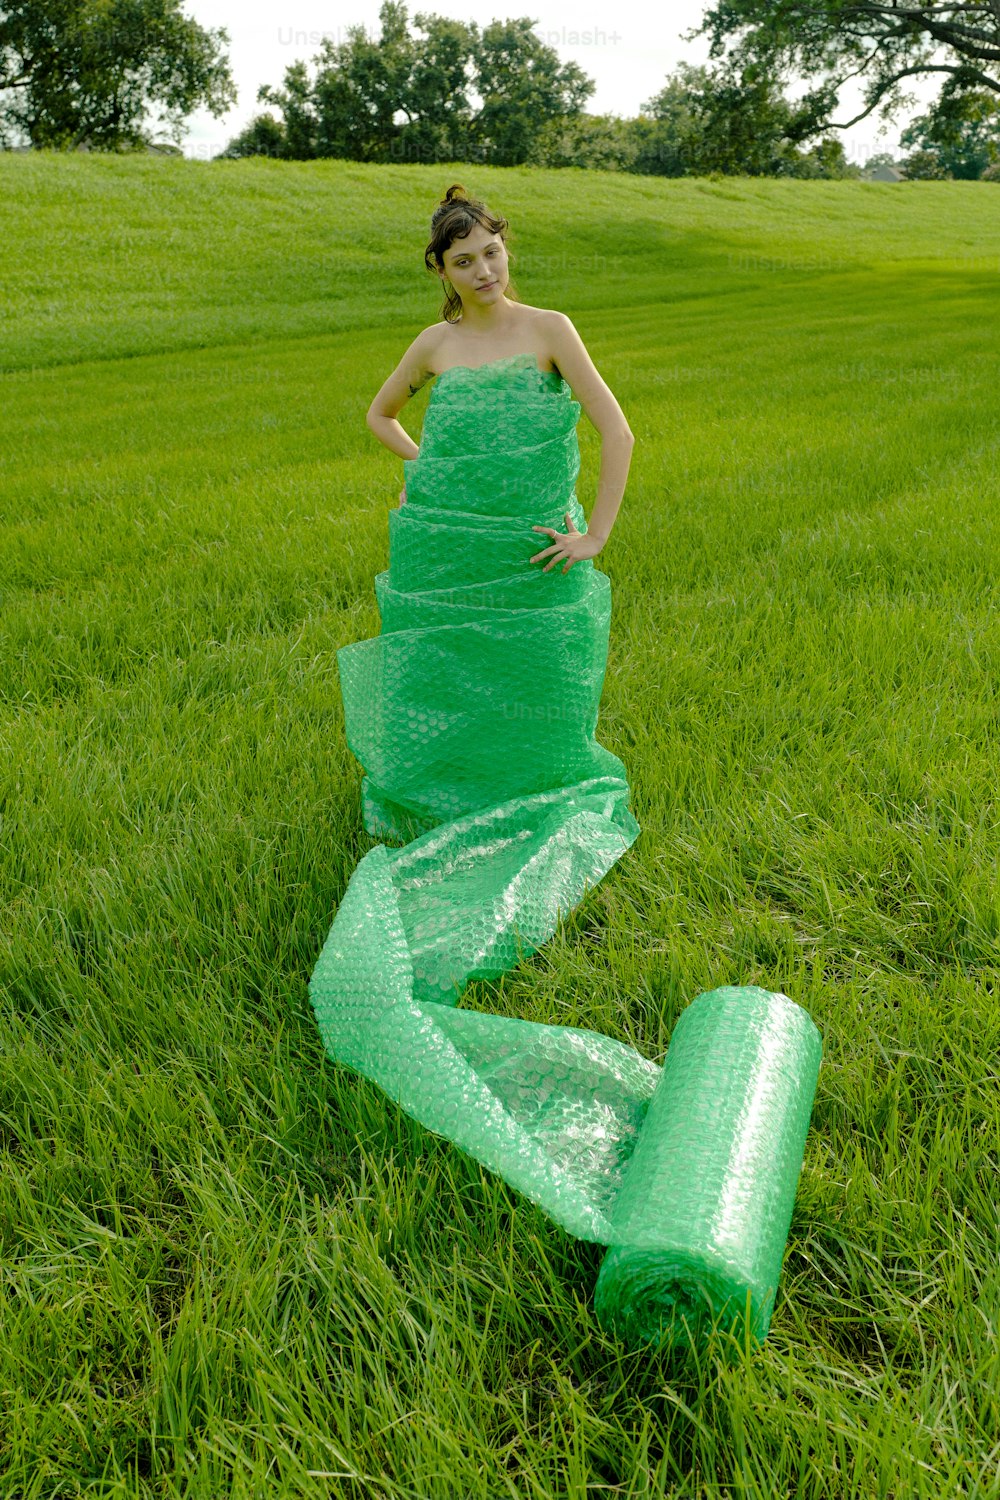 들판에 서 있는 녹색 드레스를 입은 여자